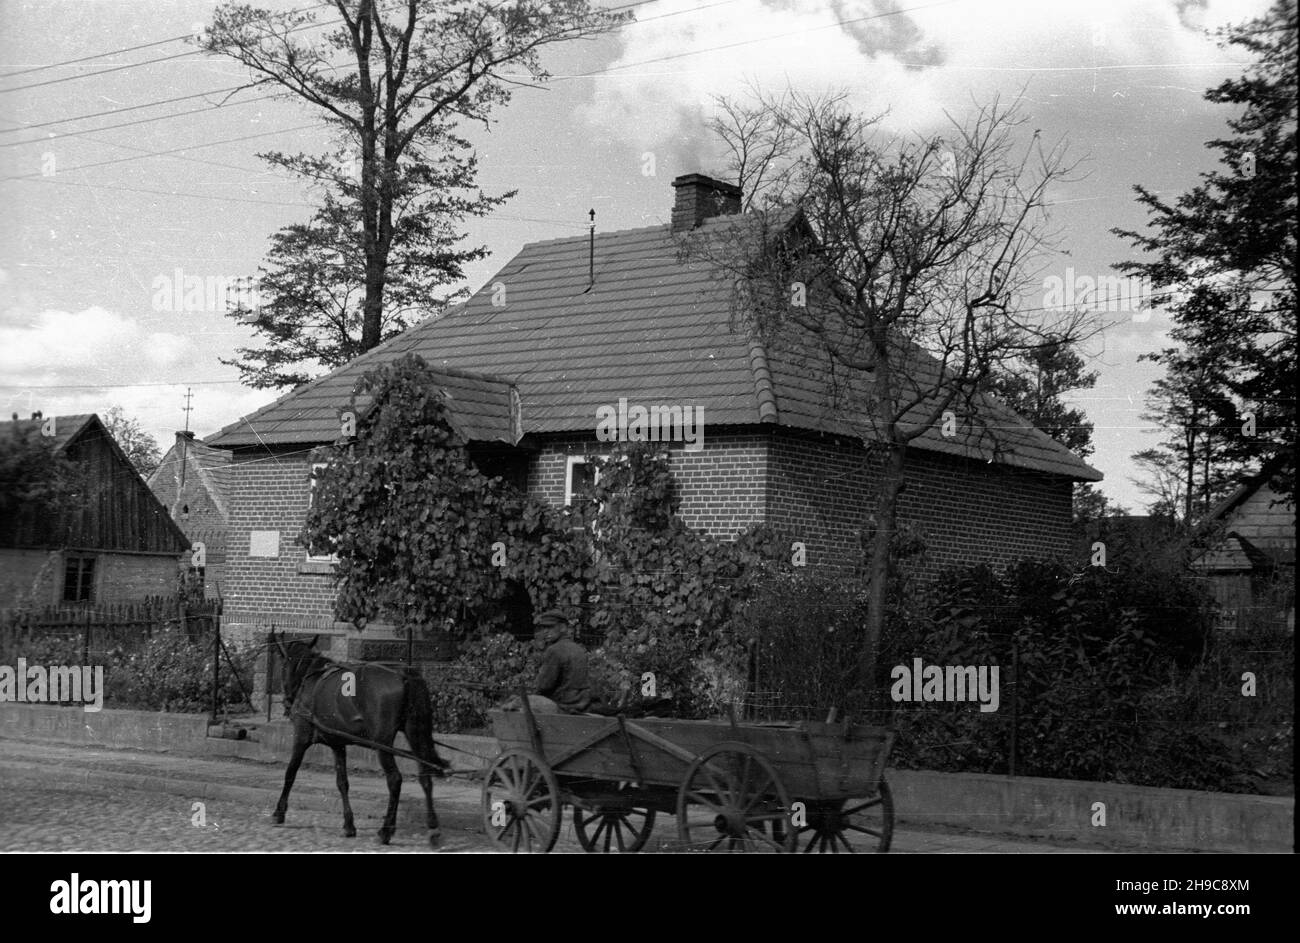 Lisków, 1947-10. Wóz konny na g³ównej drodze wsi. wb/gr  PAP    Dok³adny dzieñ wydarzenia nieustalony.    Liskow, Oct. 1947. A horse-driven cart on the village's main road.  wb/gr  PAP Stock Photo